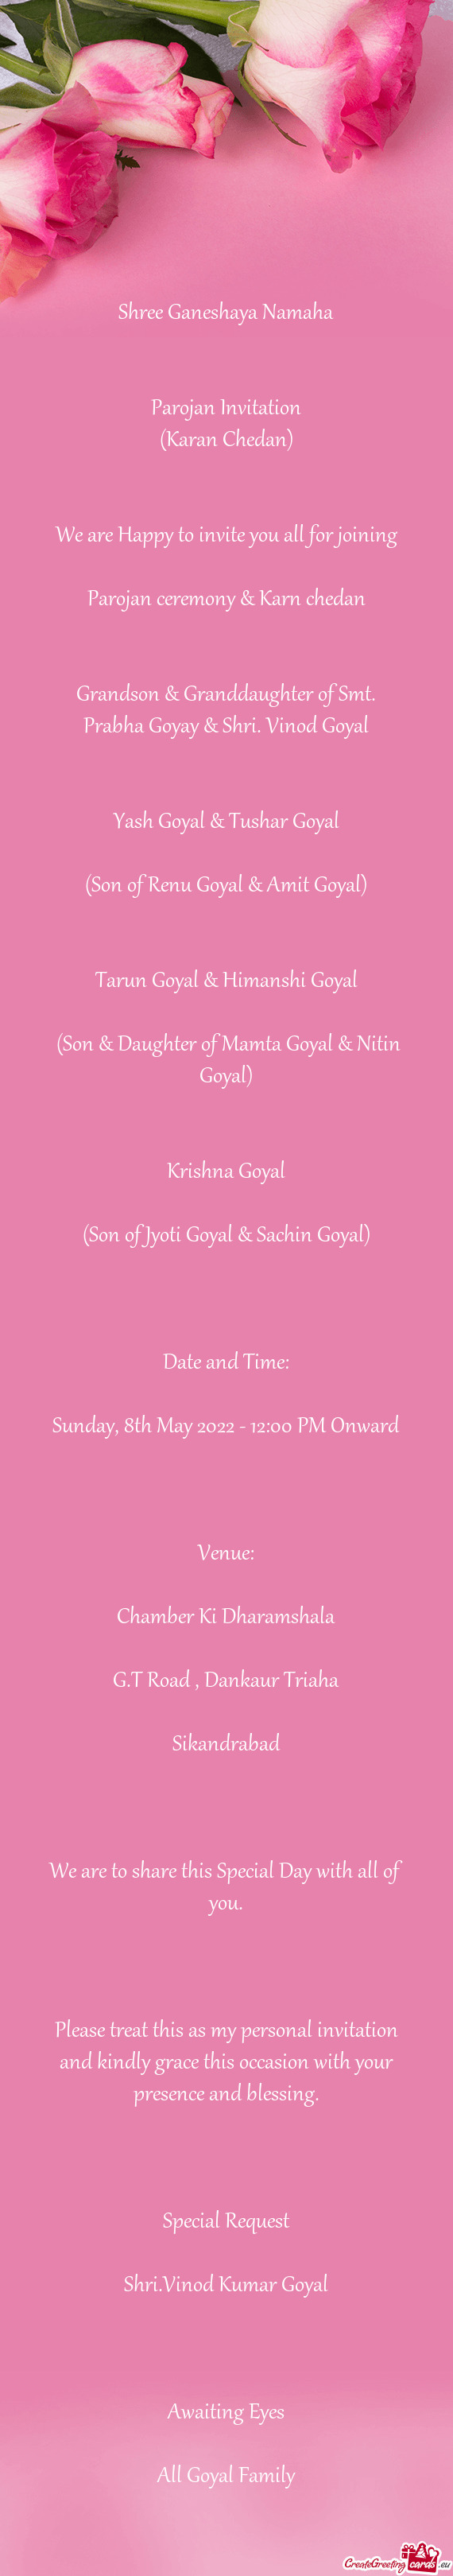 Grandson & Granddaughter of Smt. Prabha Goyay & Shri. Vinod Goyal